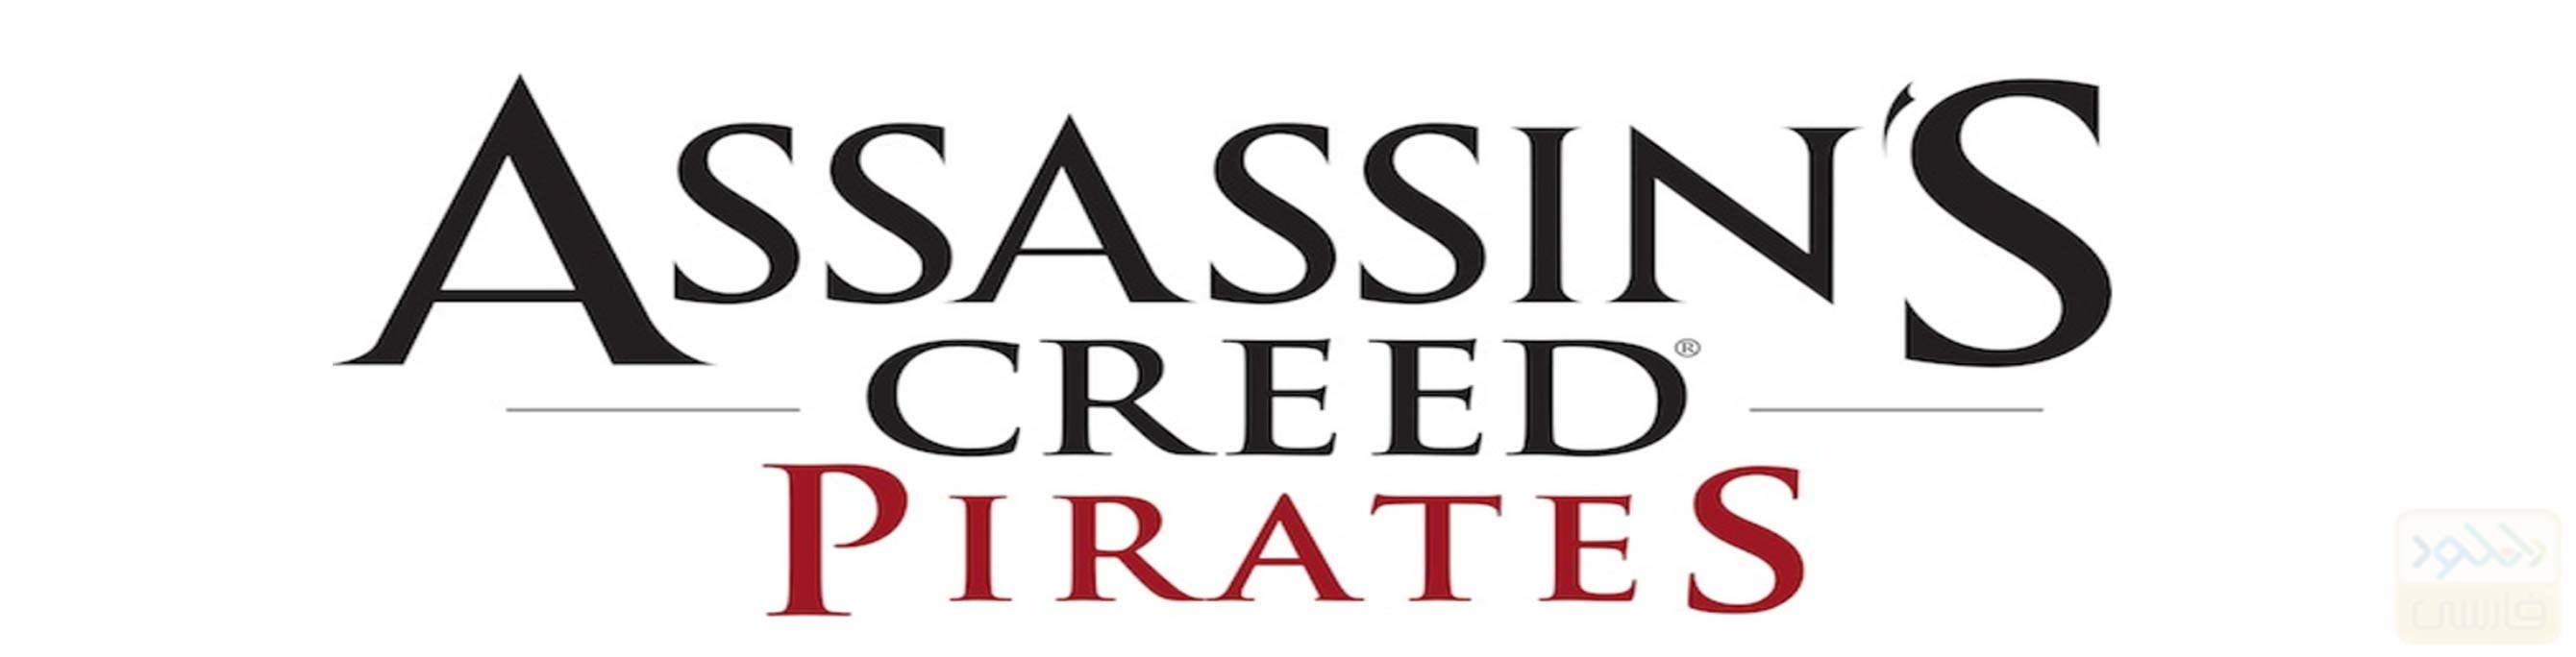 دانلود بازی Assassins Creed Pirates 2.9.0 برای آیفون و آیپد